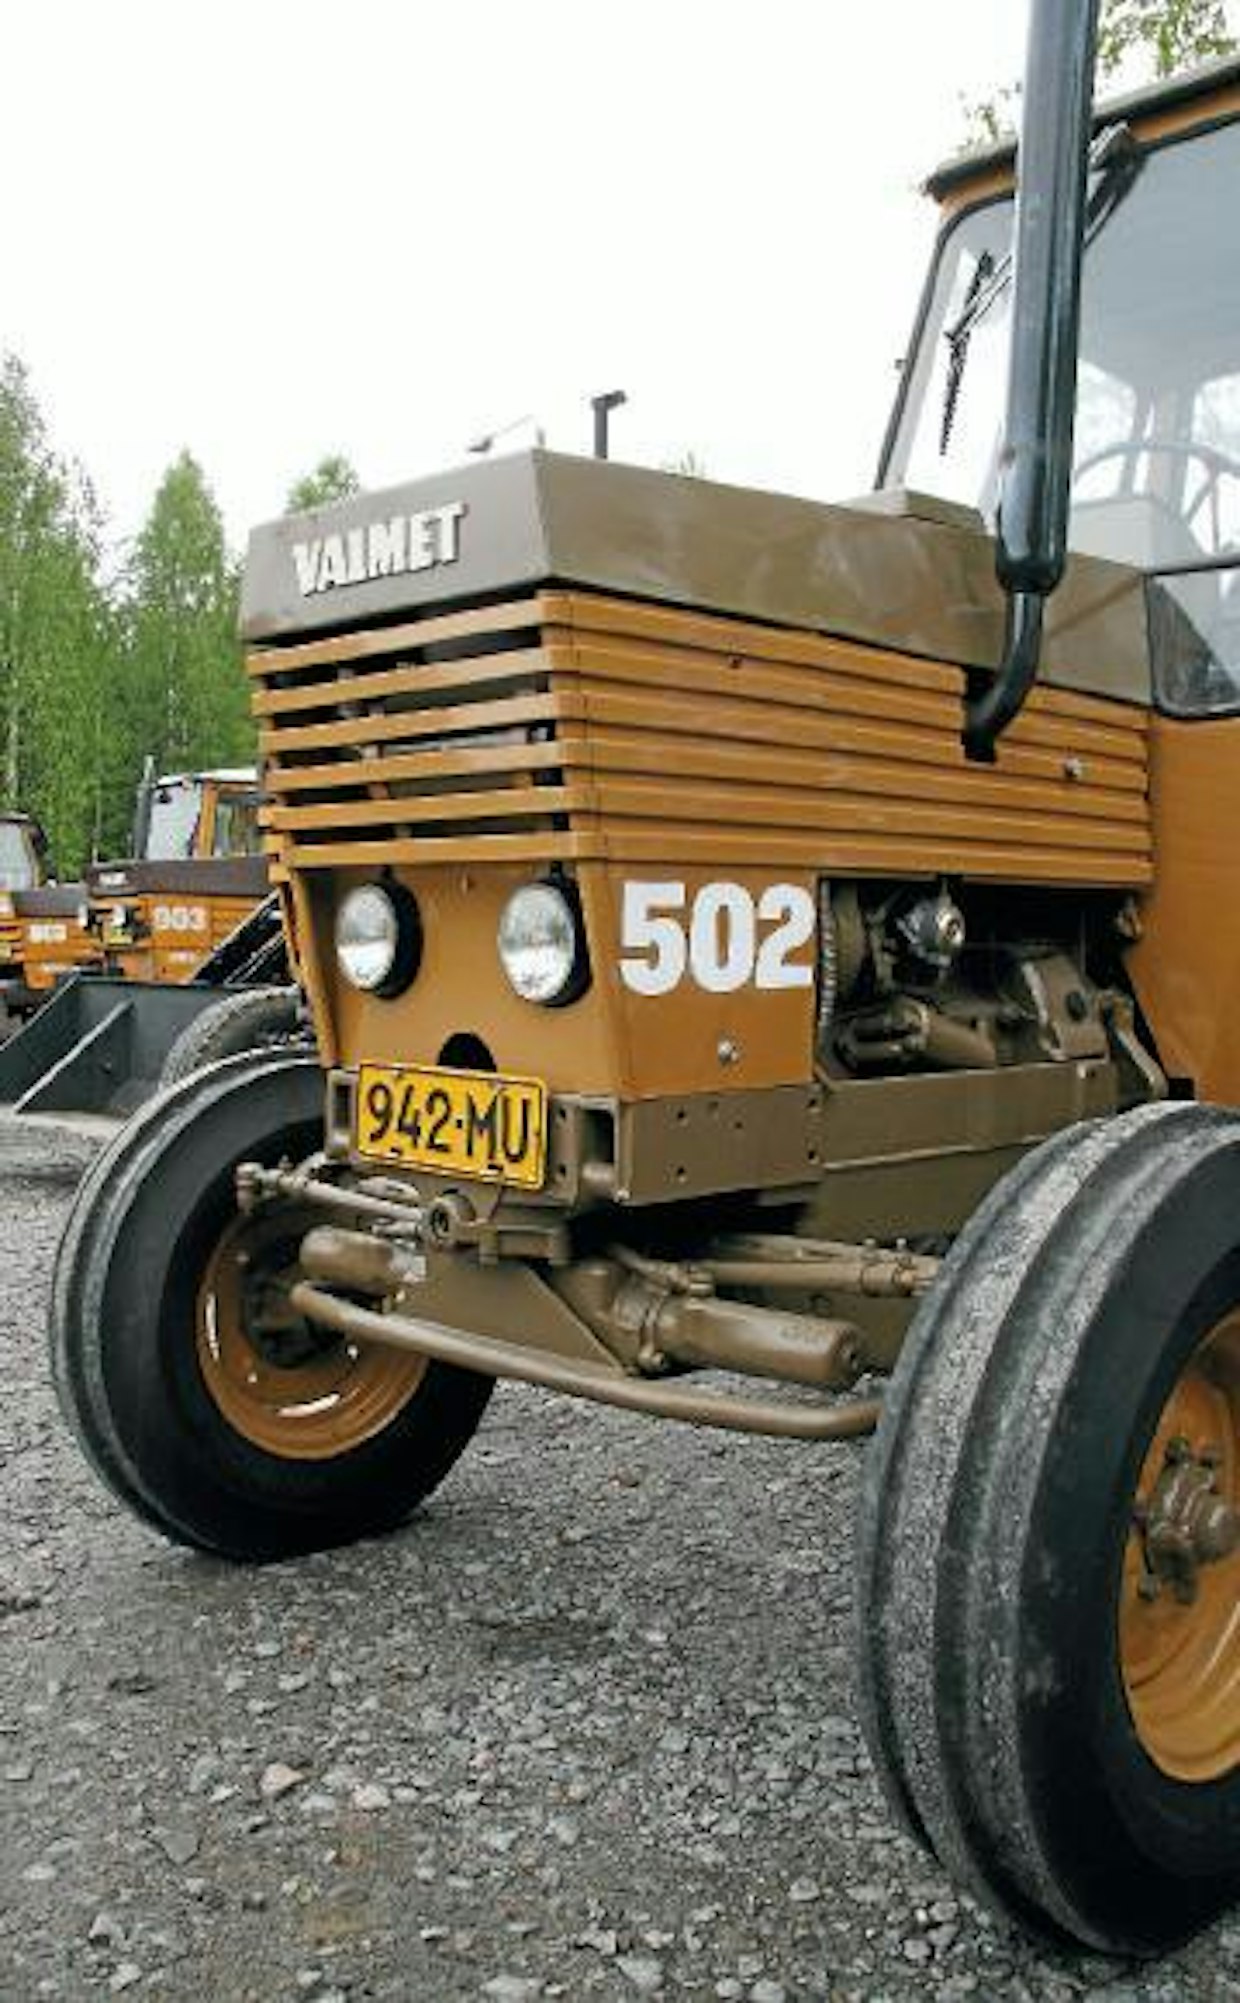 Valmet 502 on tärkeä osa suomalaista traktori- ja maaseutuhistoriaa. Lukemattomat pikkupojat aloittivat traktorimiehen uransa aikoinaan juuri tällä legendaksi muodostuneella traktorilla.